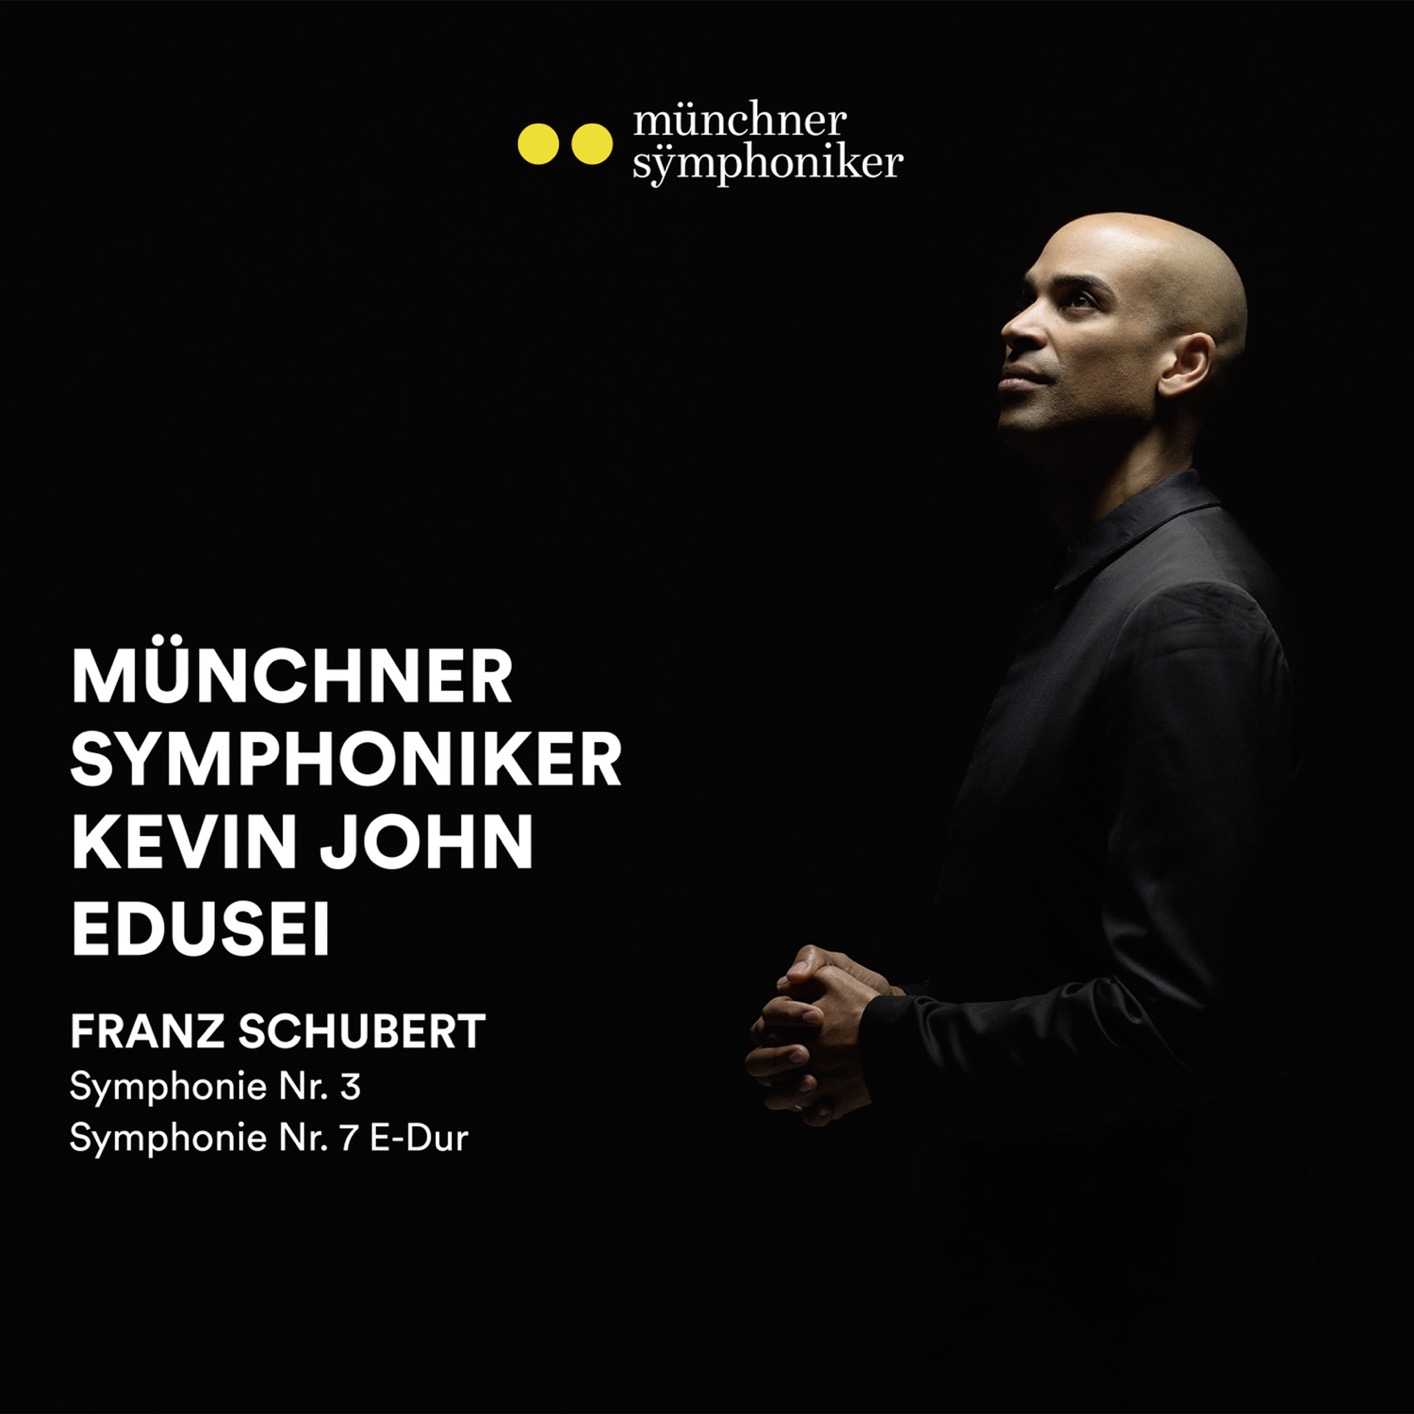 Munchner Symphoniker & Kevin John Edusei - Schubert Symphonien 3 & 7 (2020) [FLAC 24bit/192kHz]